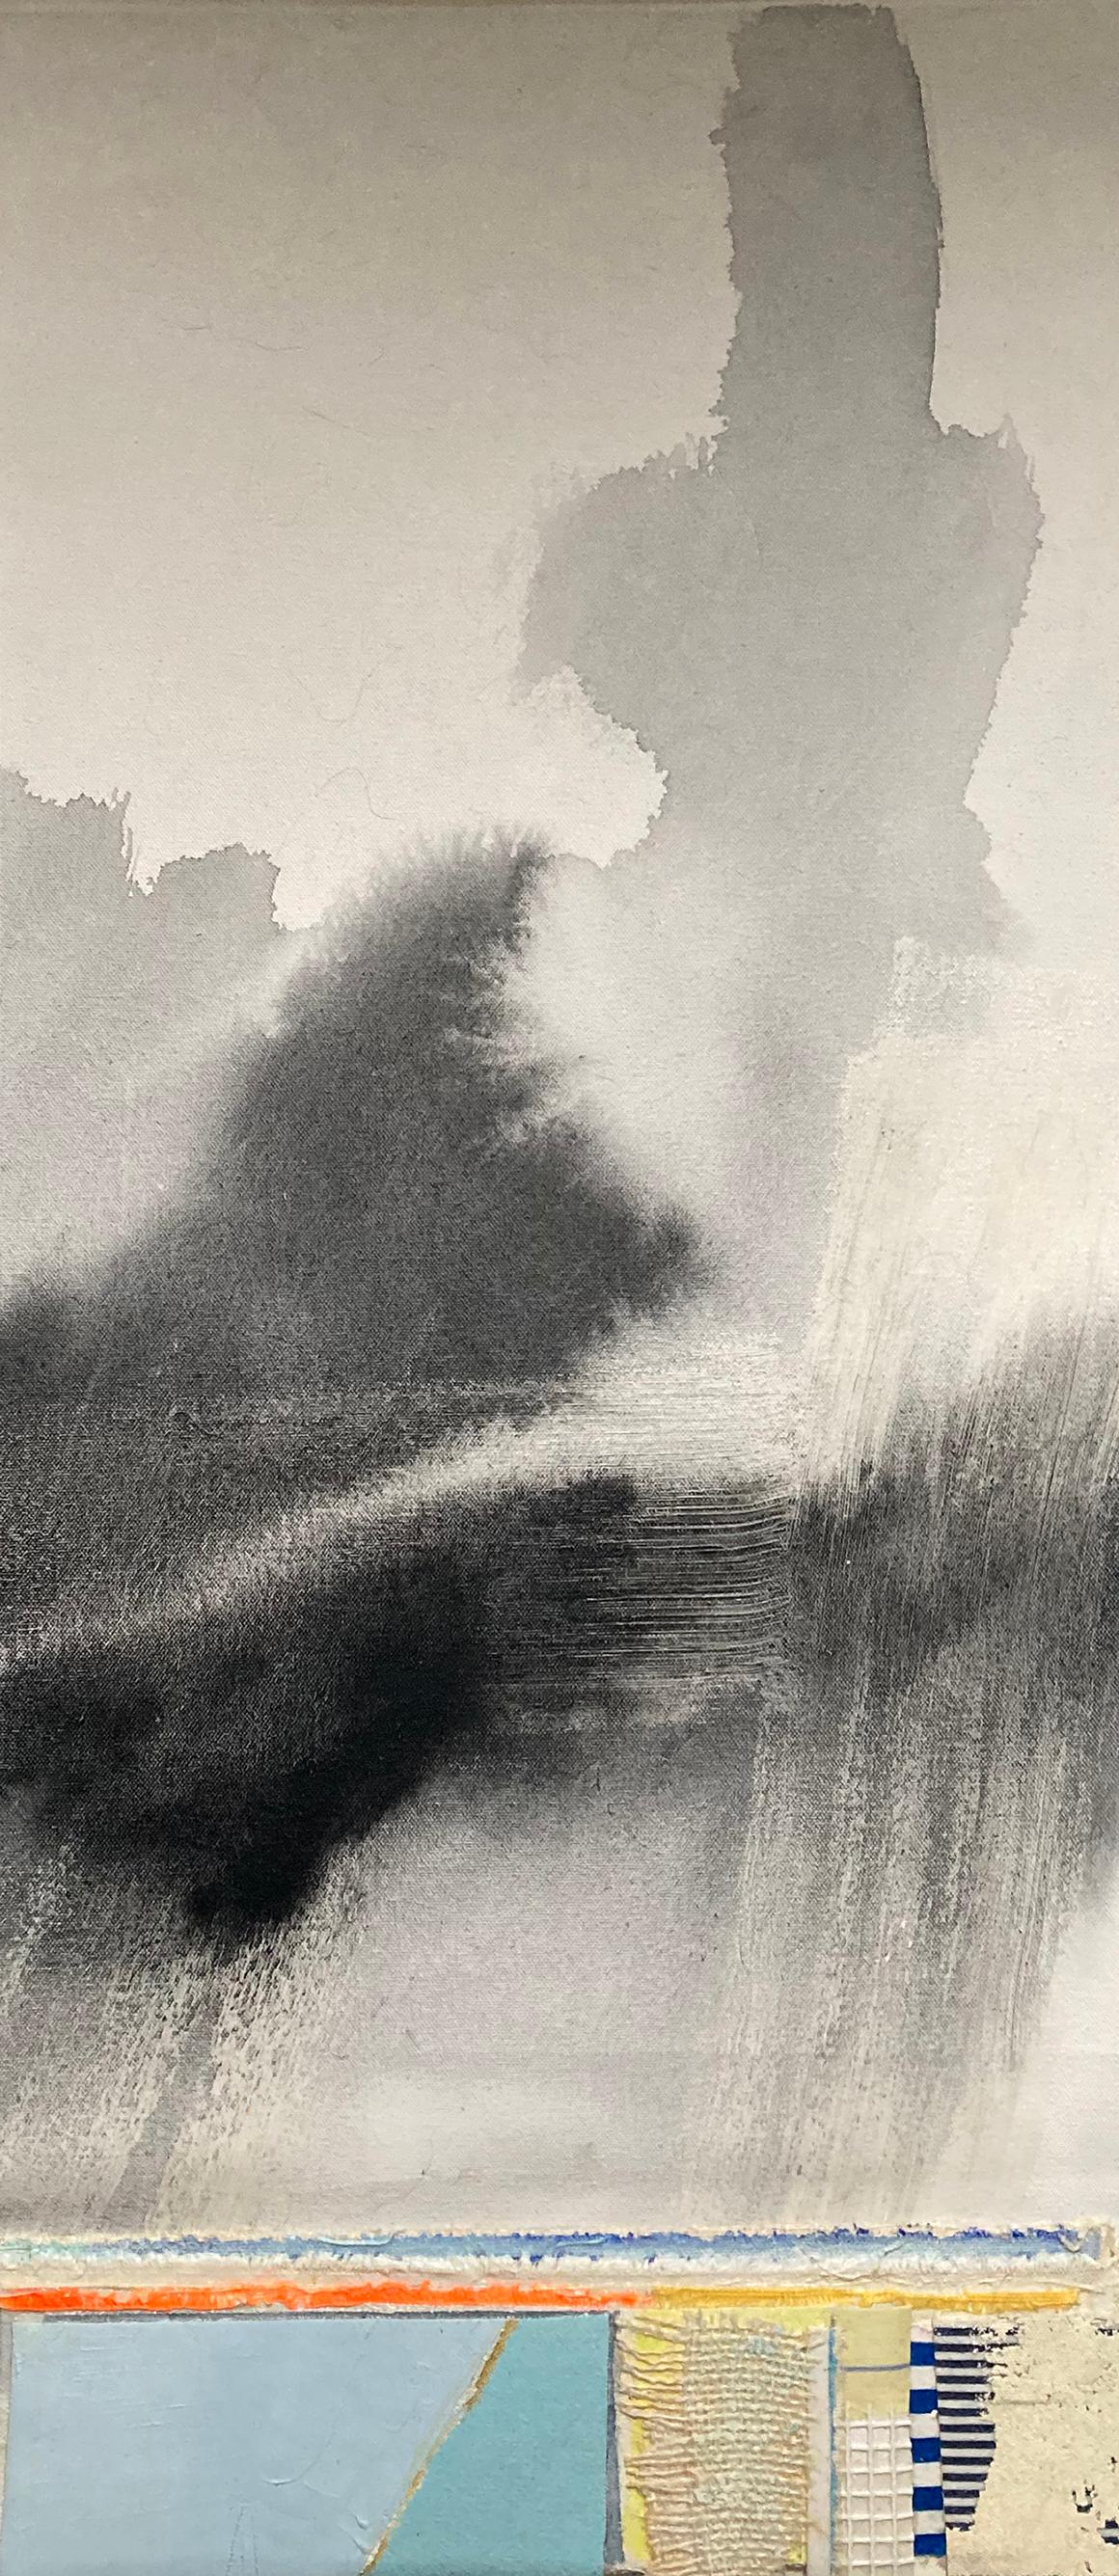 "The Front #2" von Eugene Healy, 2020. Stoffcollage und Öl auf Leinwand. 11.75 x 28,5 Rahmen: 29,5 x 13,5 Zoll. Sein abstraktes Landschaftsgemälde zeigt eine abstrahierte Meereslandschaft mit Land, Meer und Skt in einer Luftaufnahme. Beruhigende